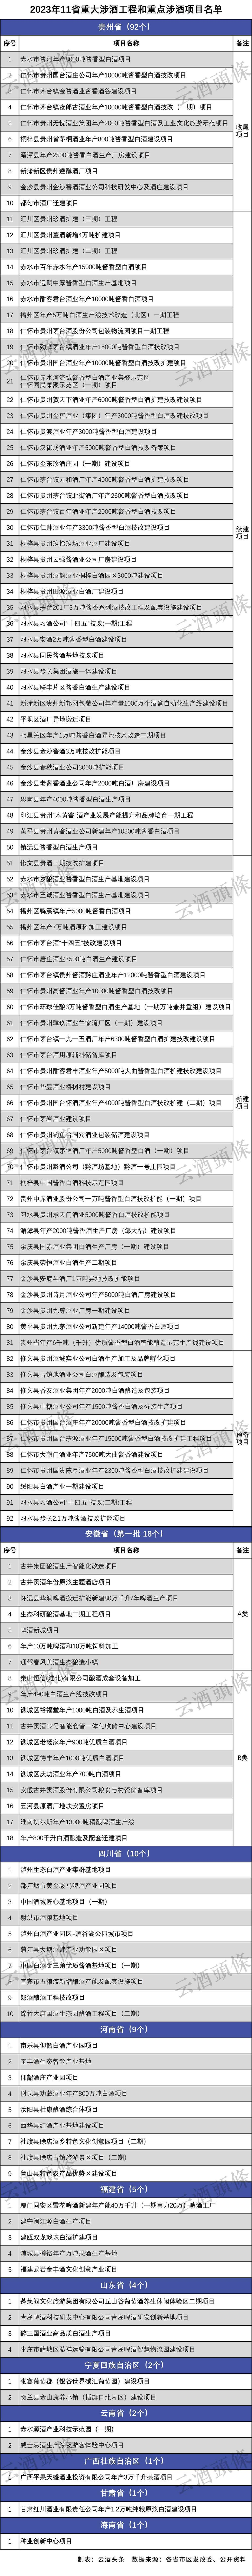 除未披露确切清单的内蒙古、广东之外，16个省市区重点项目名单中，涉酒项目达145个，主要分布在贵州、安徽、四川、河南、福建、山东等11个省市区。